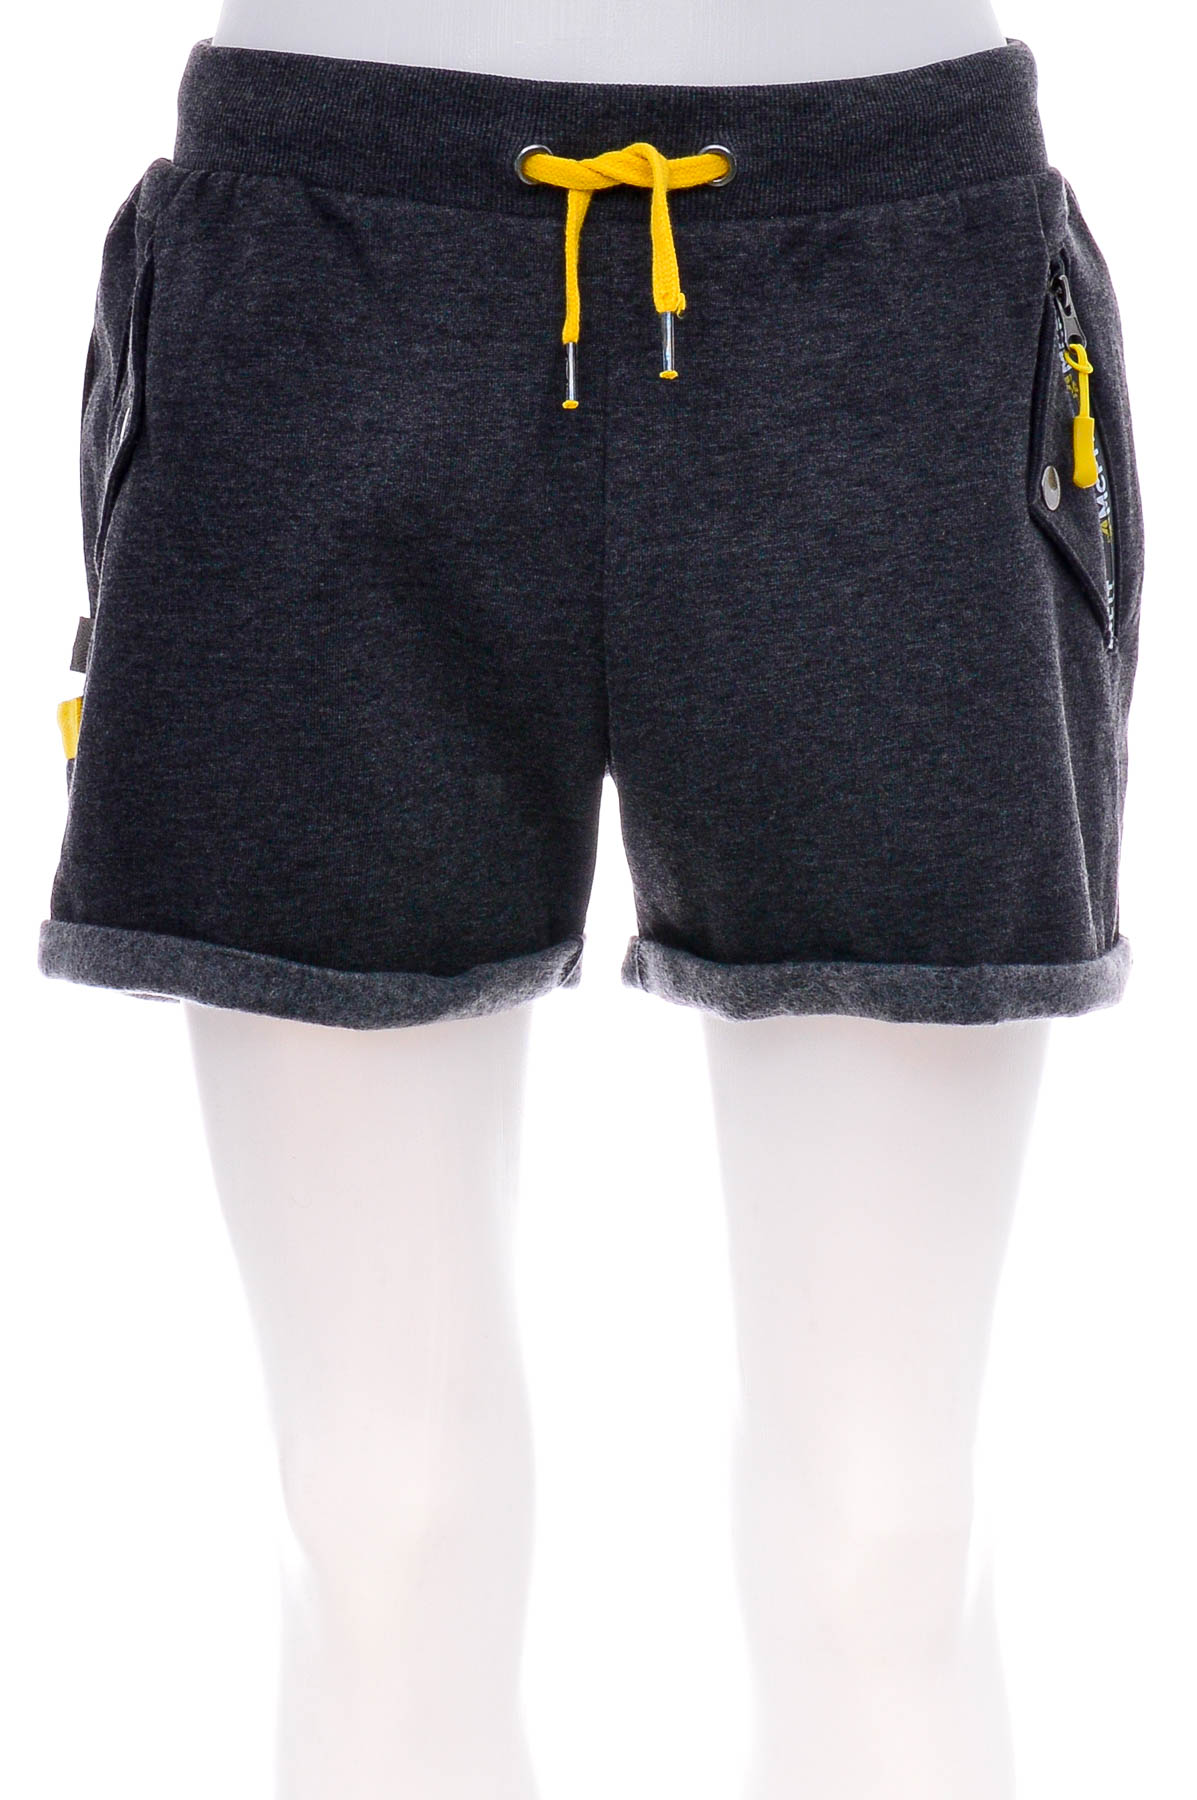 Female shorts - McFIT - 0